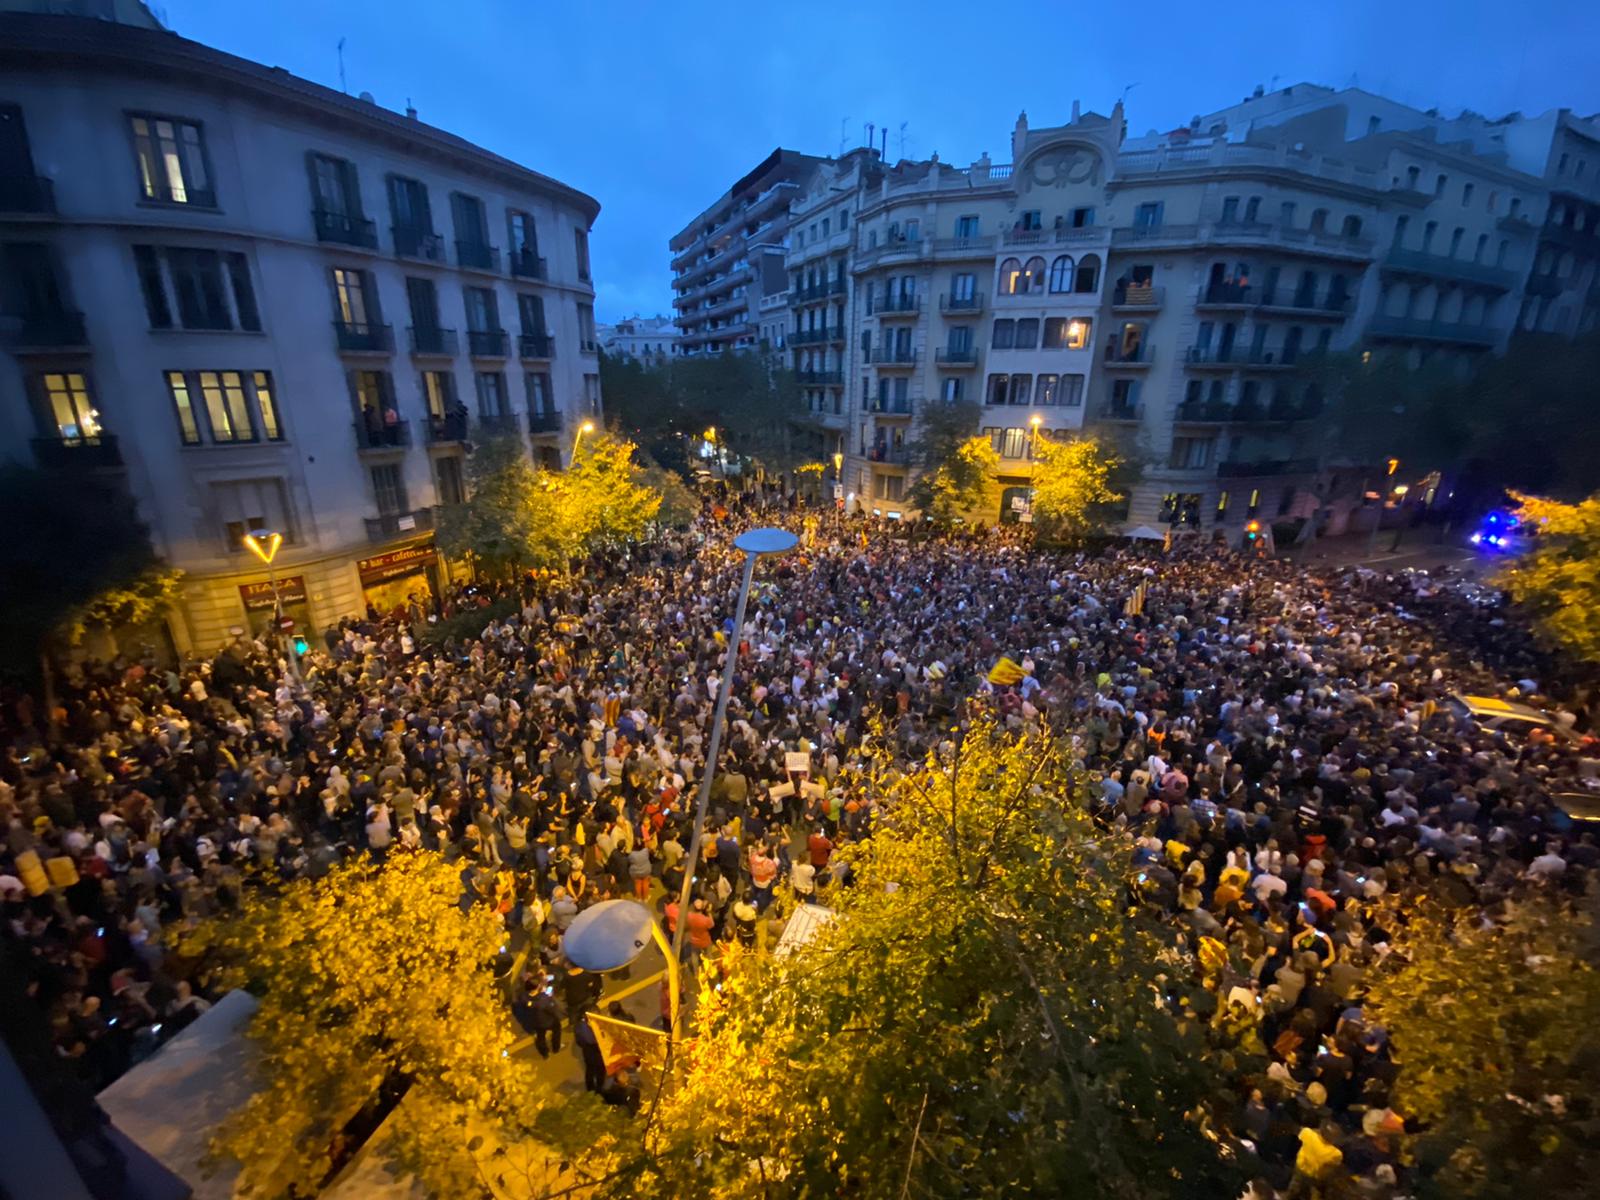 Abocament de brossa a la seu del govern espanyol, nova acció contra la sentència